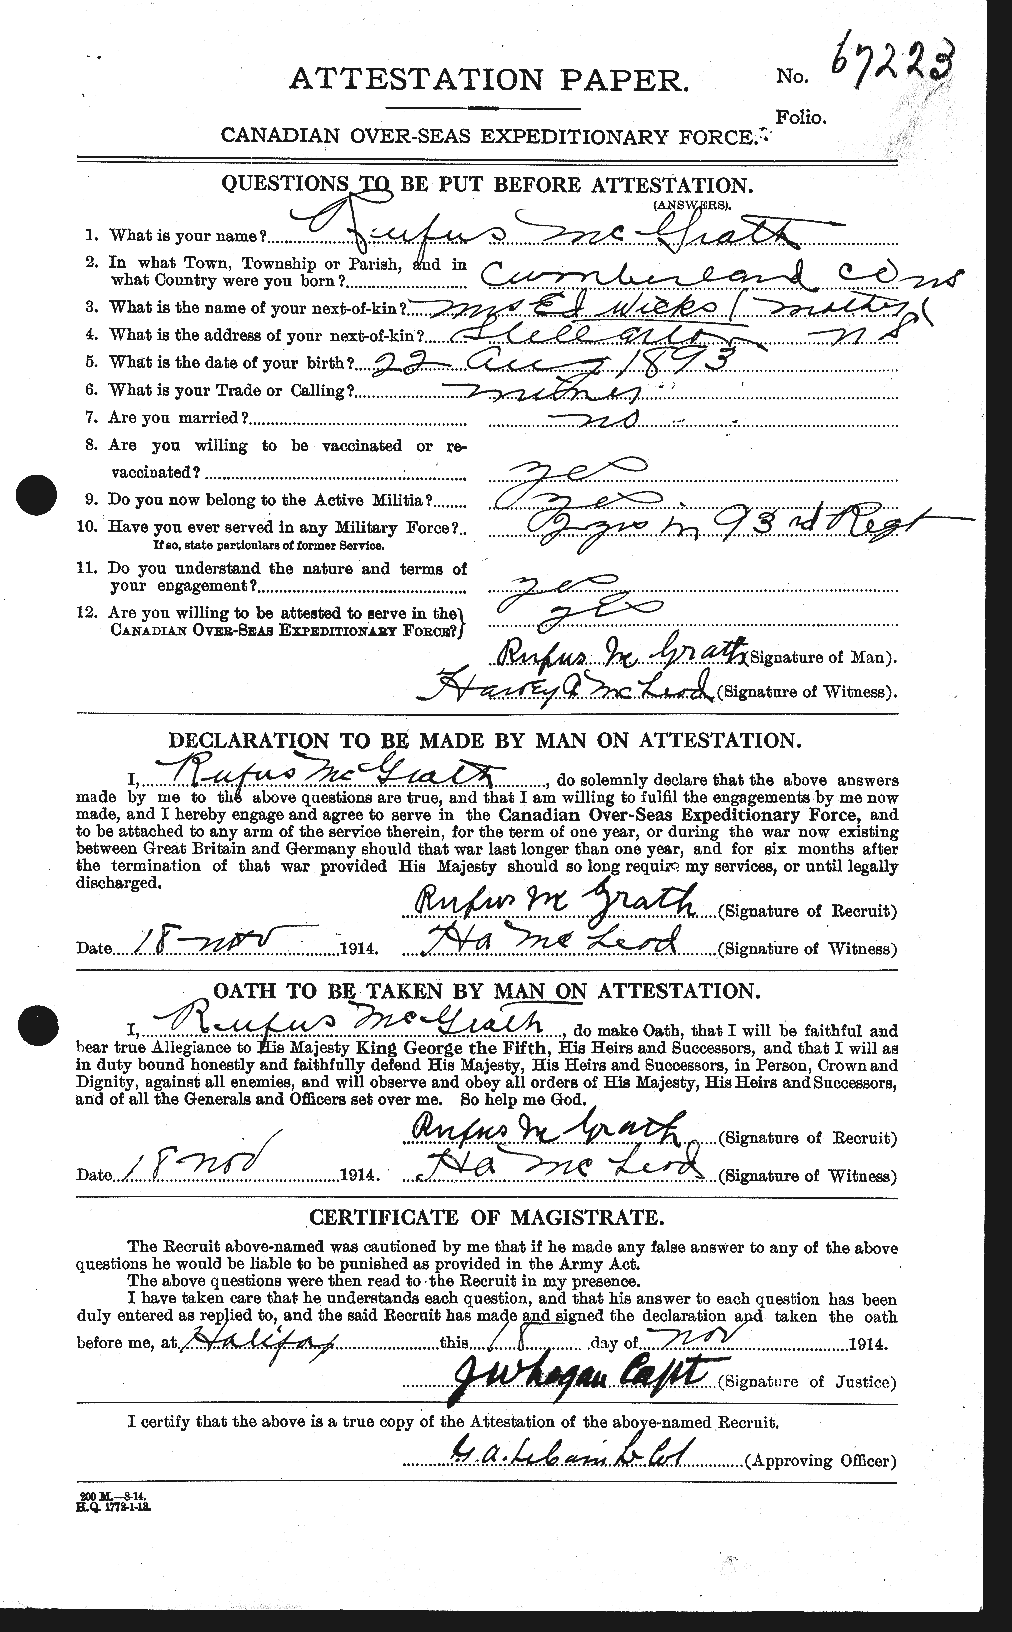 Dossiers du Personnel de la Première Guerre mondiale - CEC 523676a